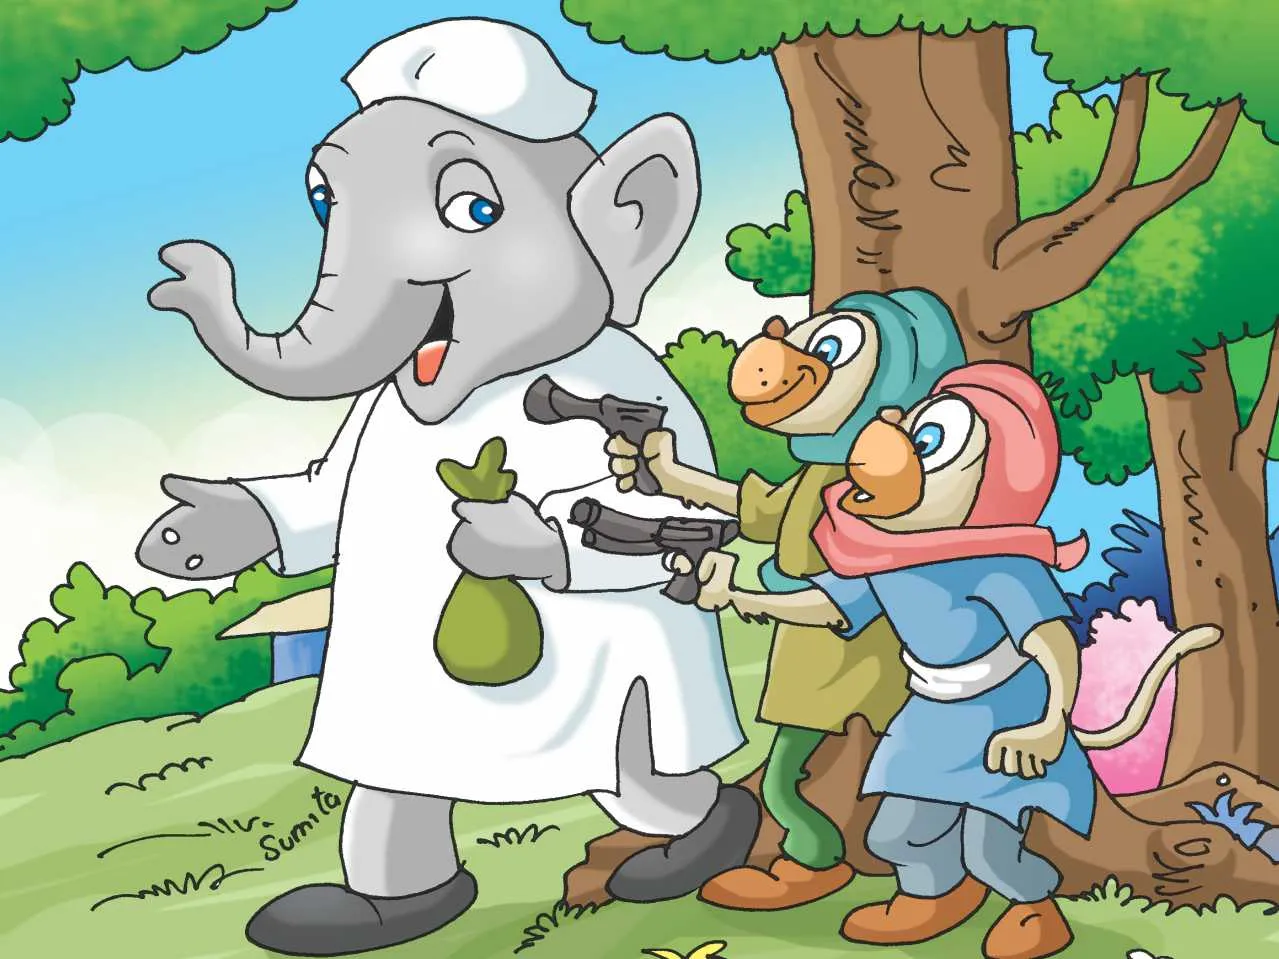 Monkey robbing elephant cartoon image